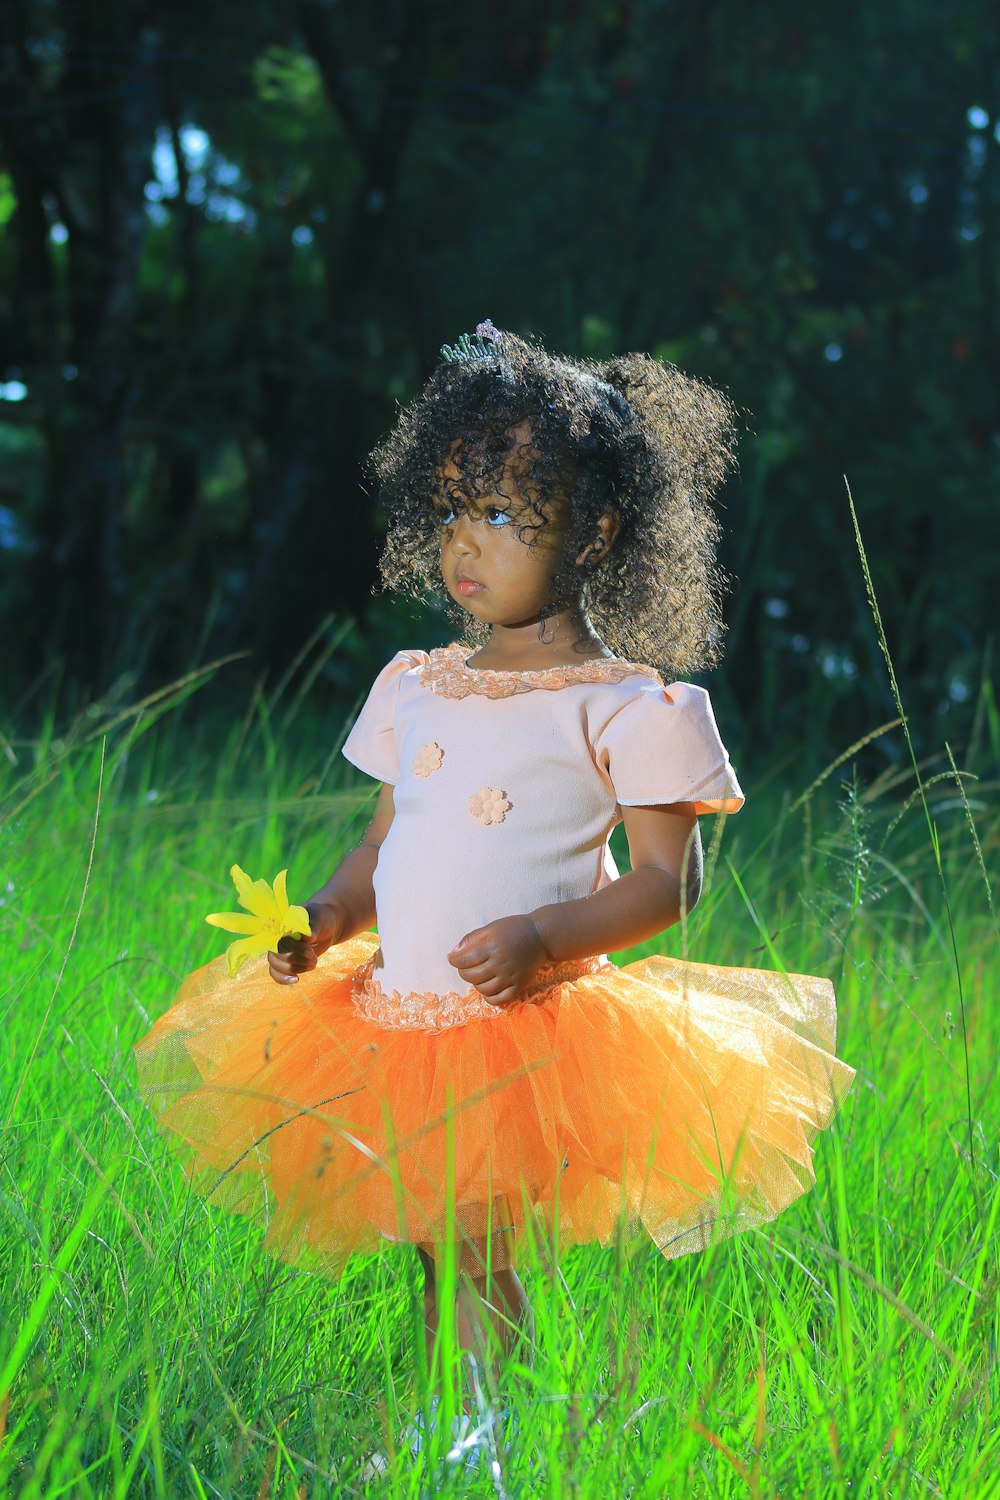 a little girl standing in a field of green grass